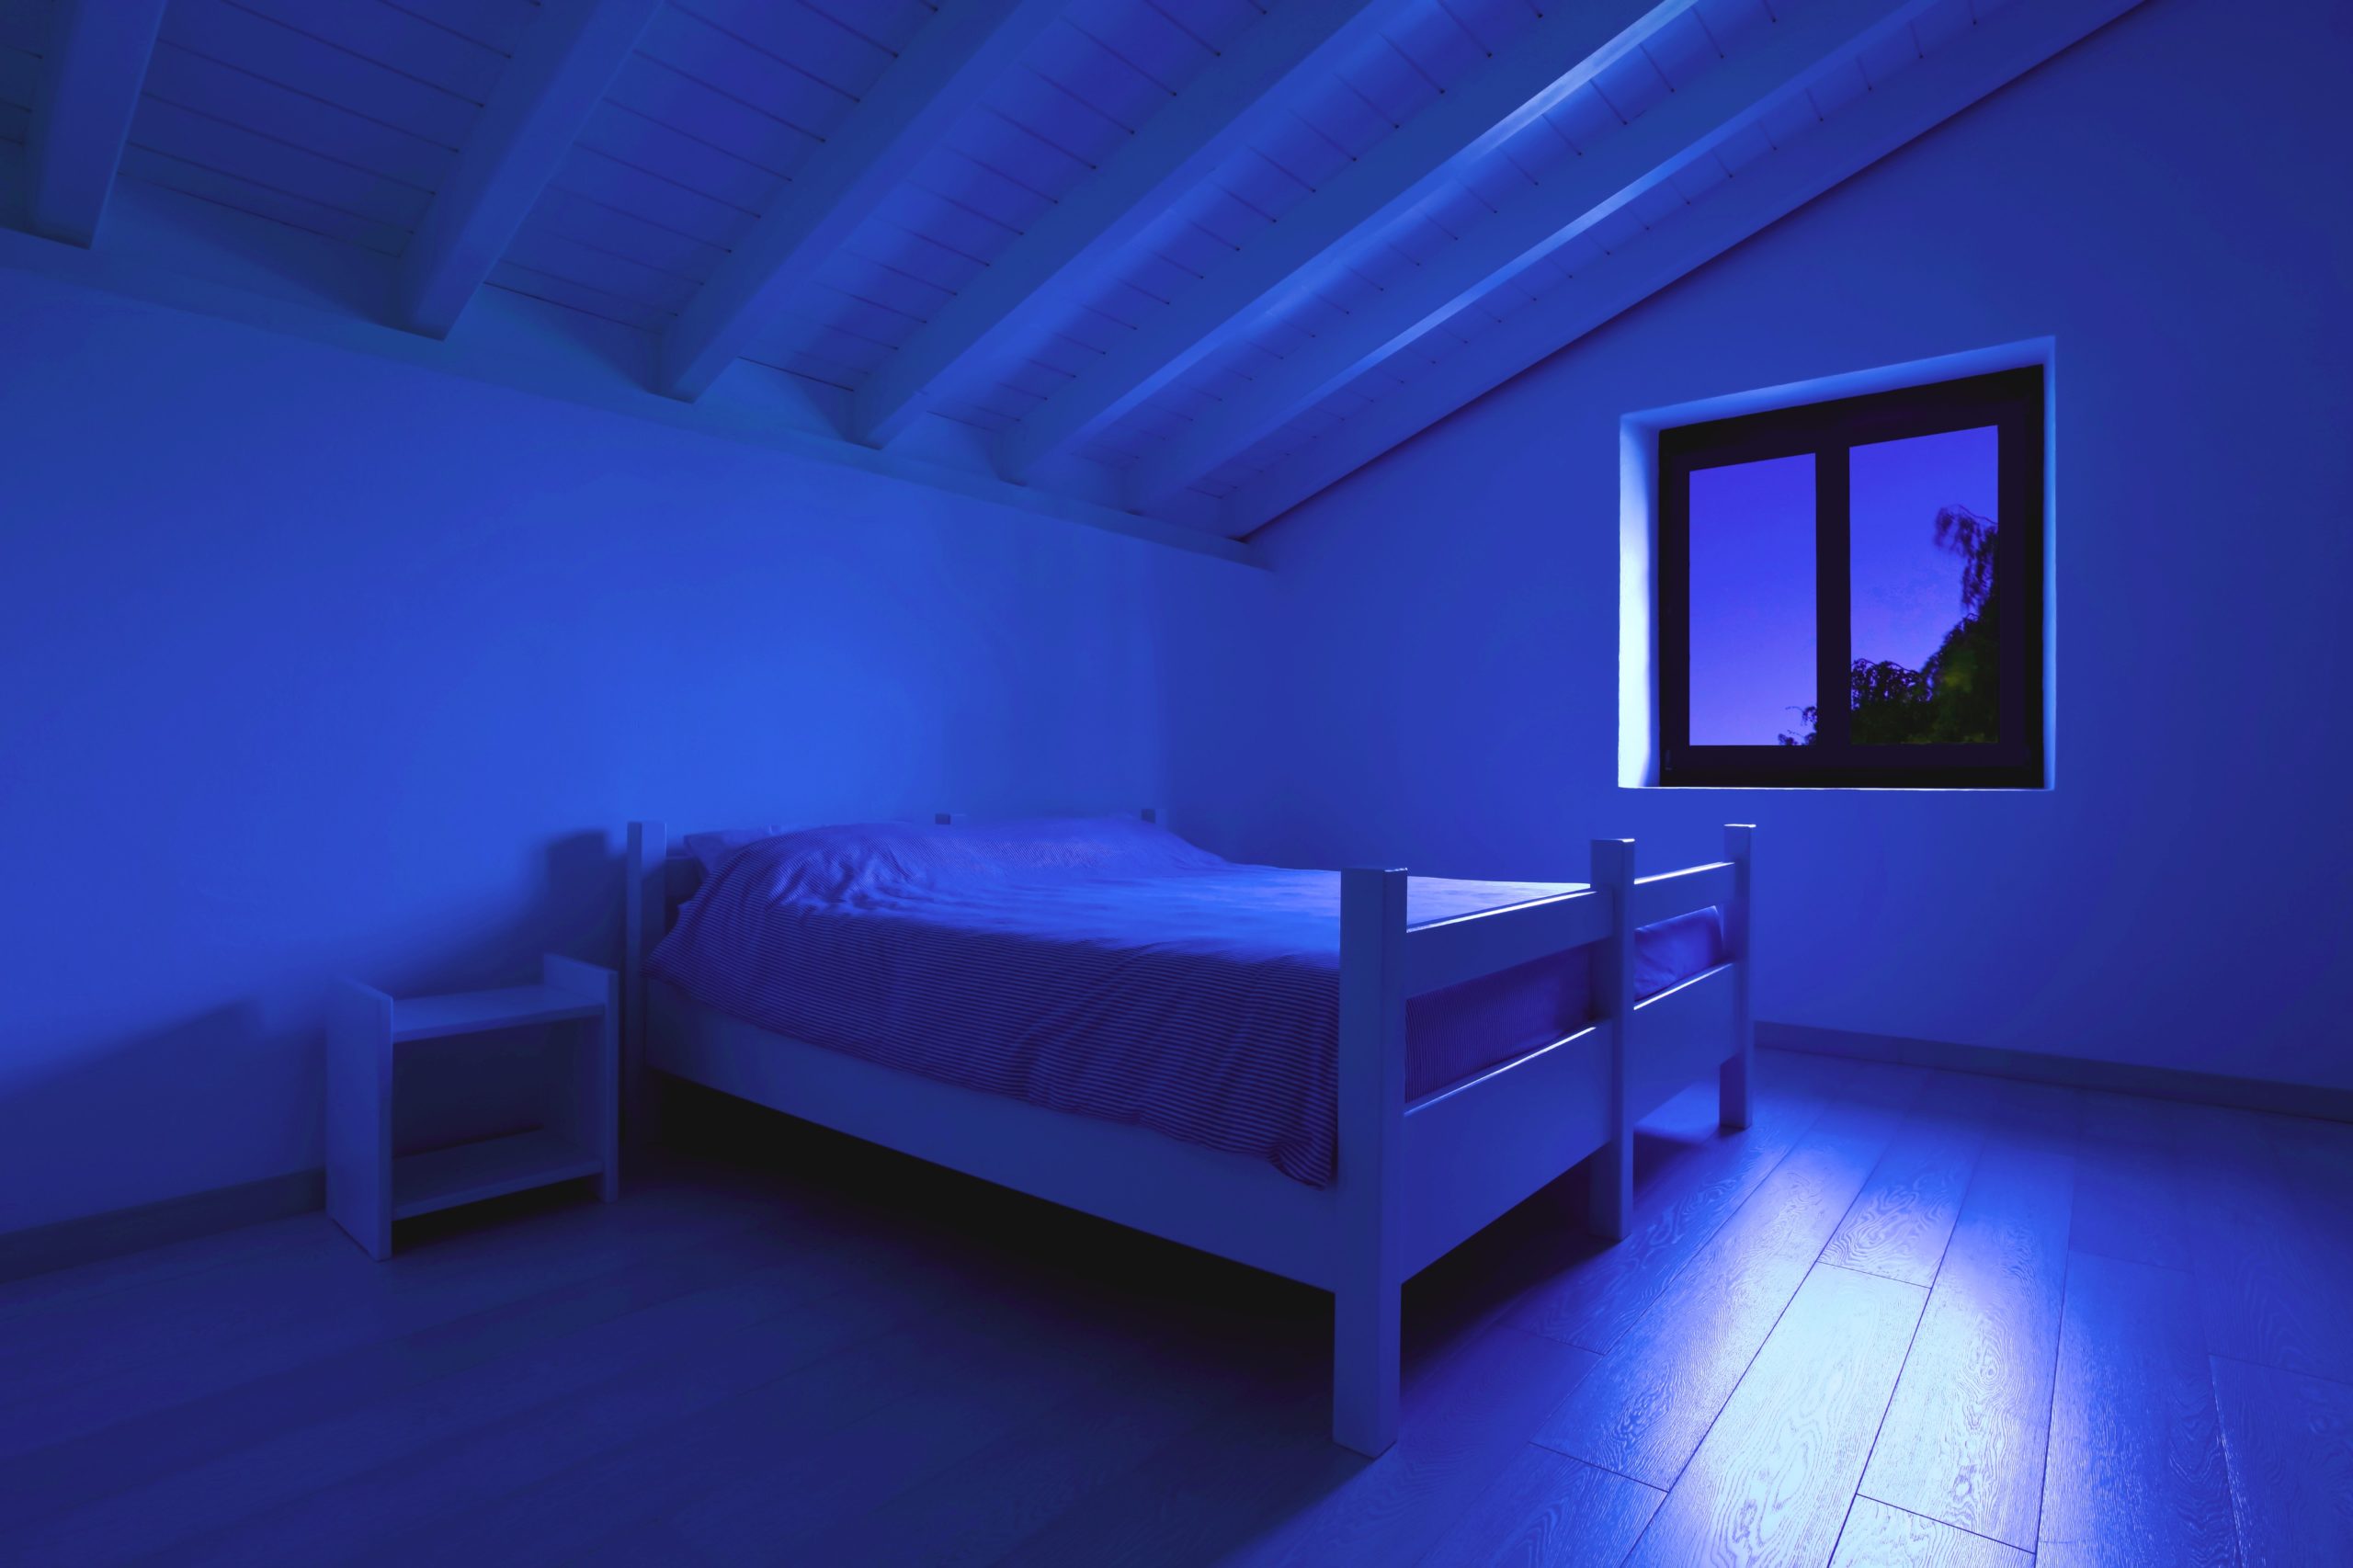 <img src="loft.jpg" alt="loft bedroom with blue night light"/> 